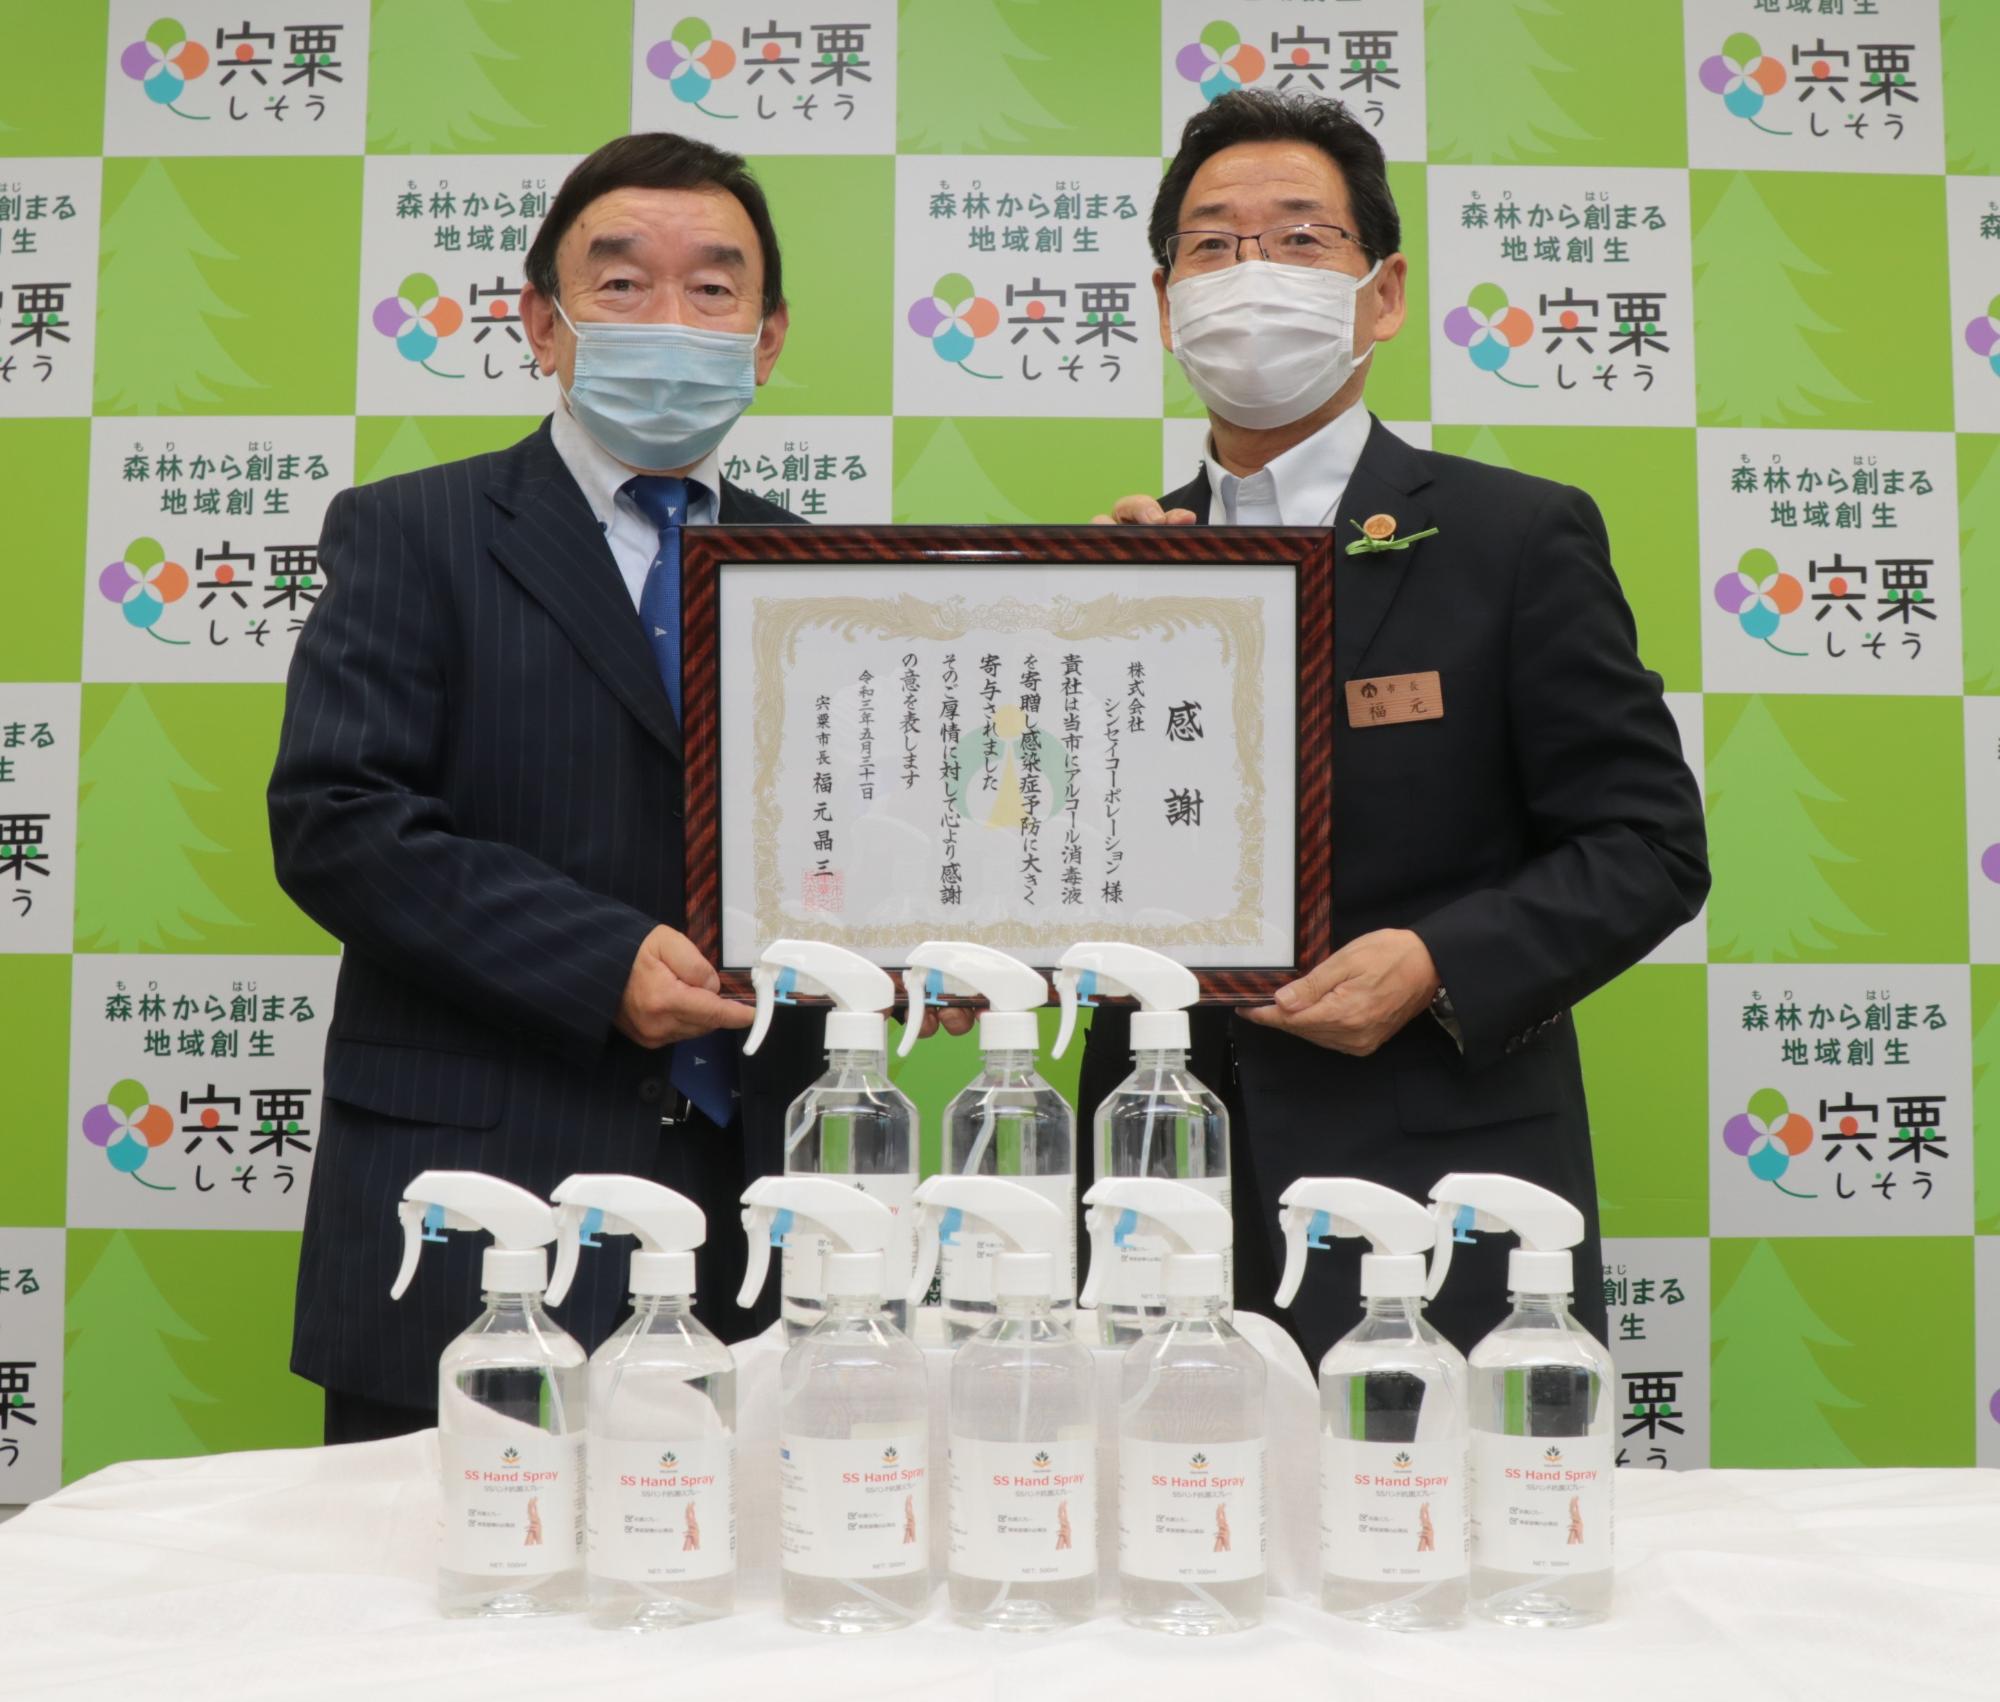 左は感謝状を手にした代表取締役会長の大東敏郎様、右は福元市長の写真